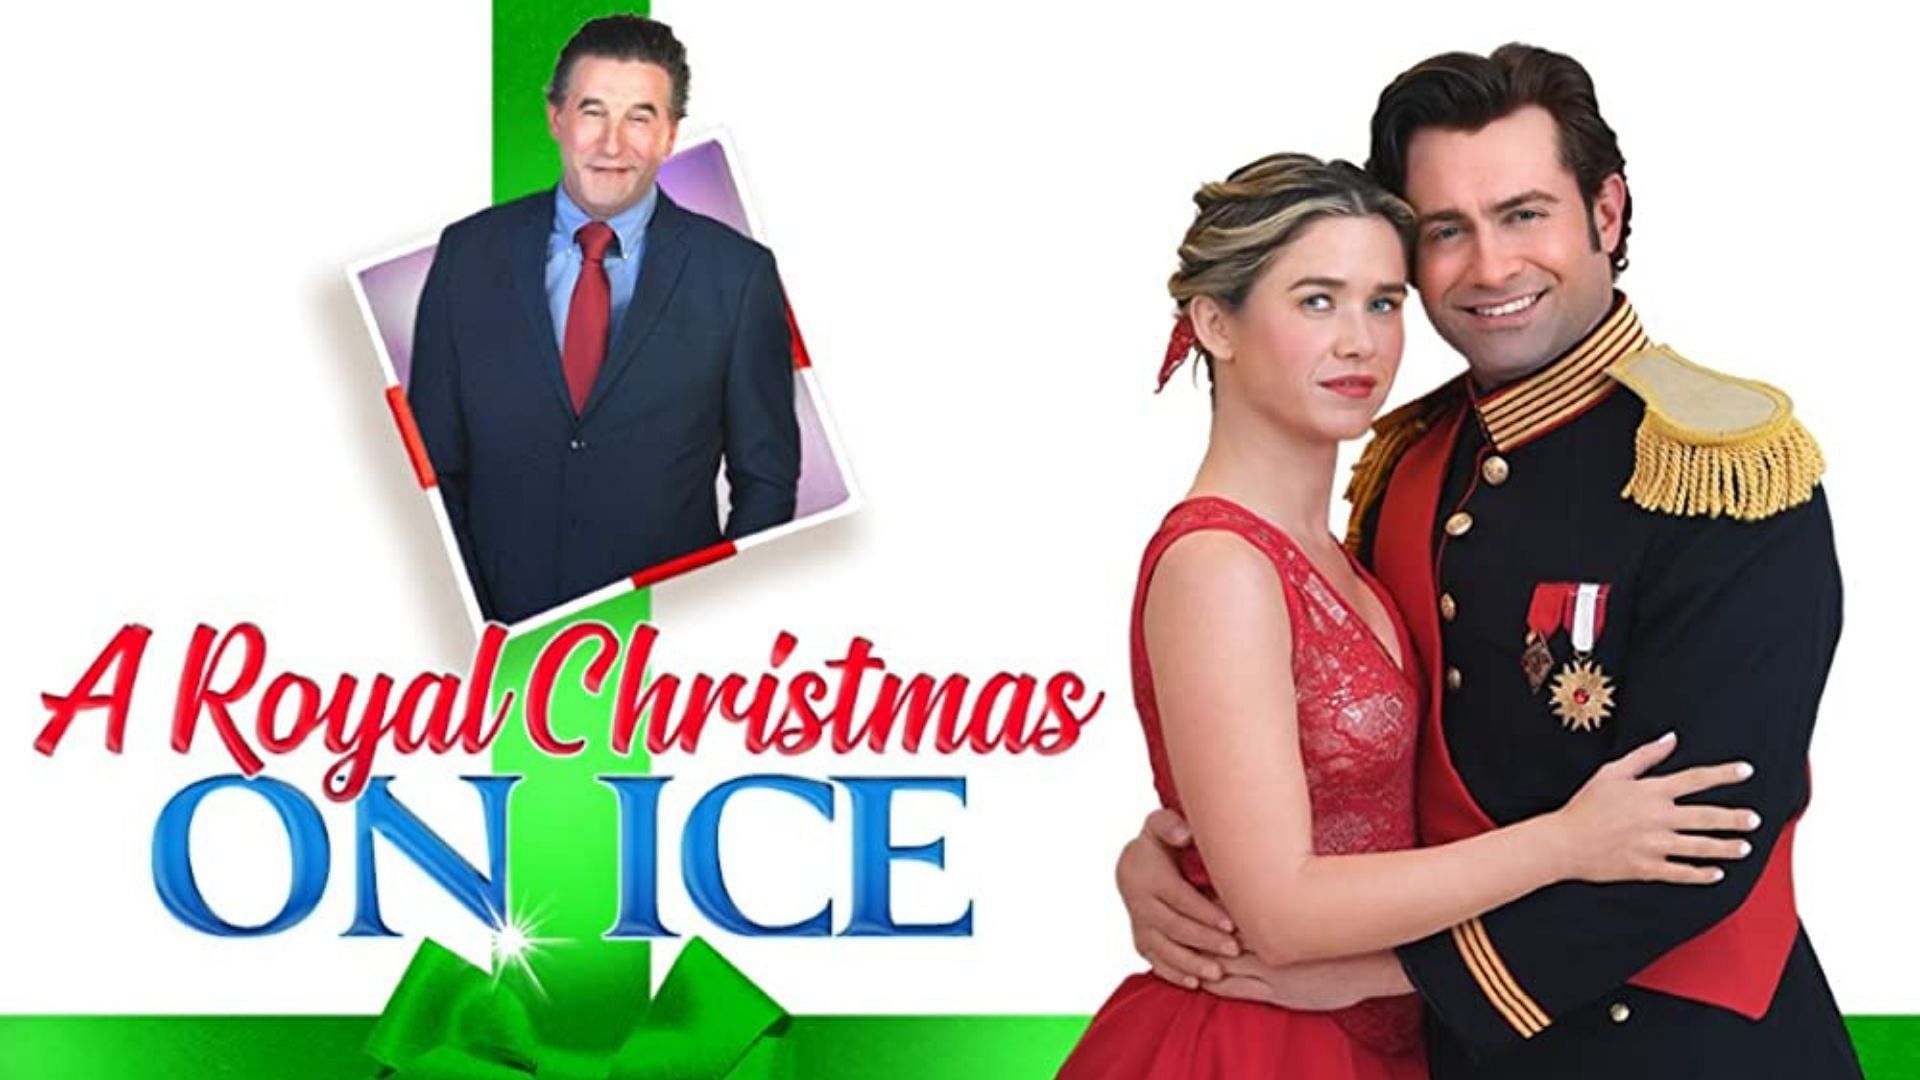 A promotional poster for A Royal Christmas on Ice (Image Via IMDb)